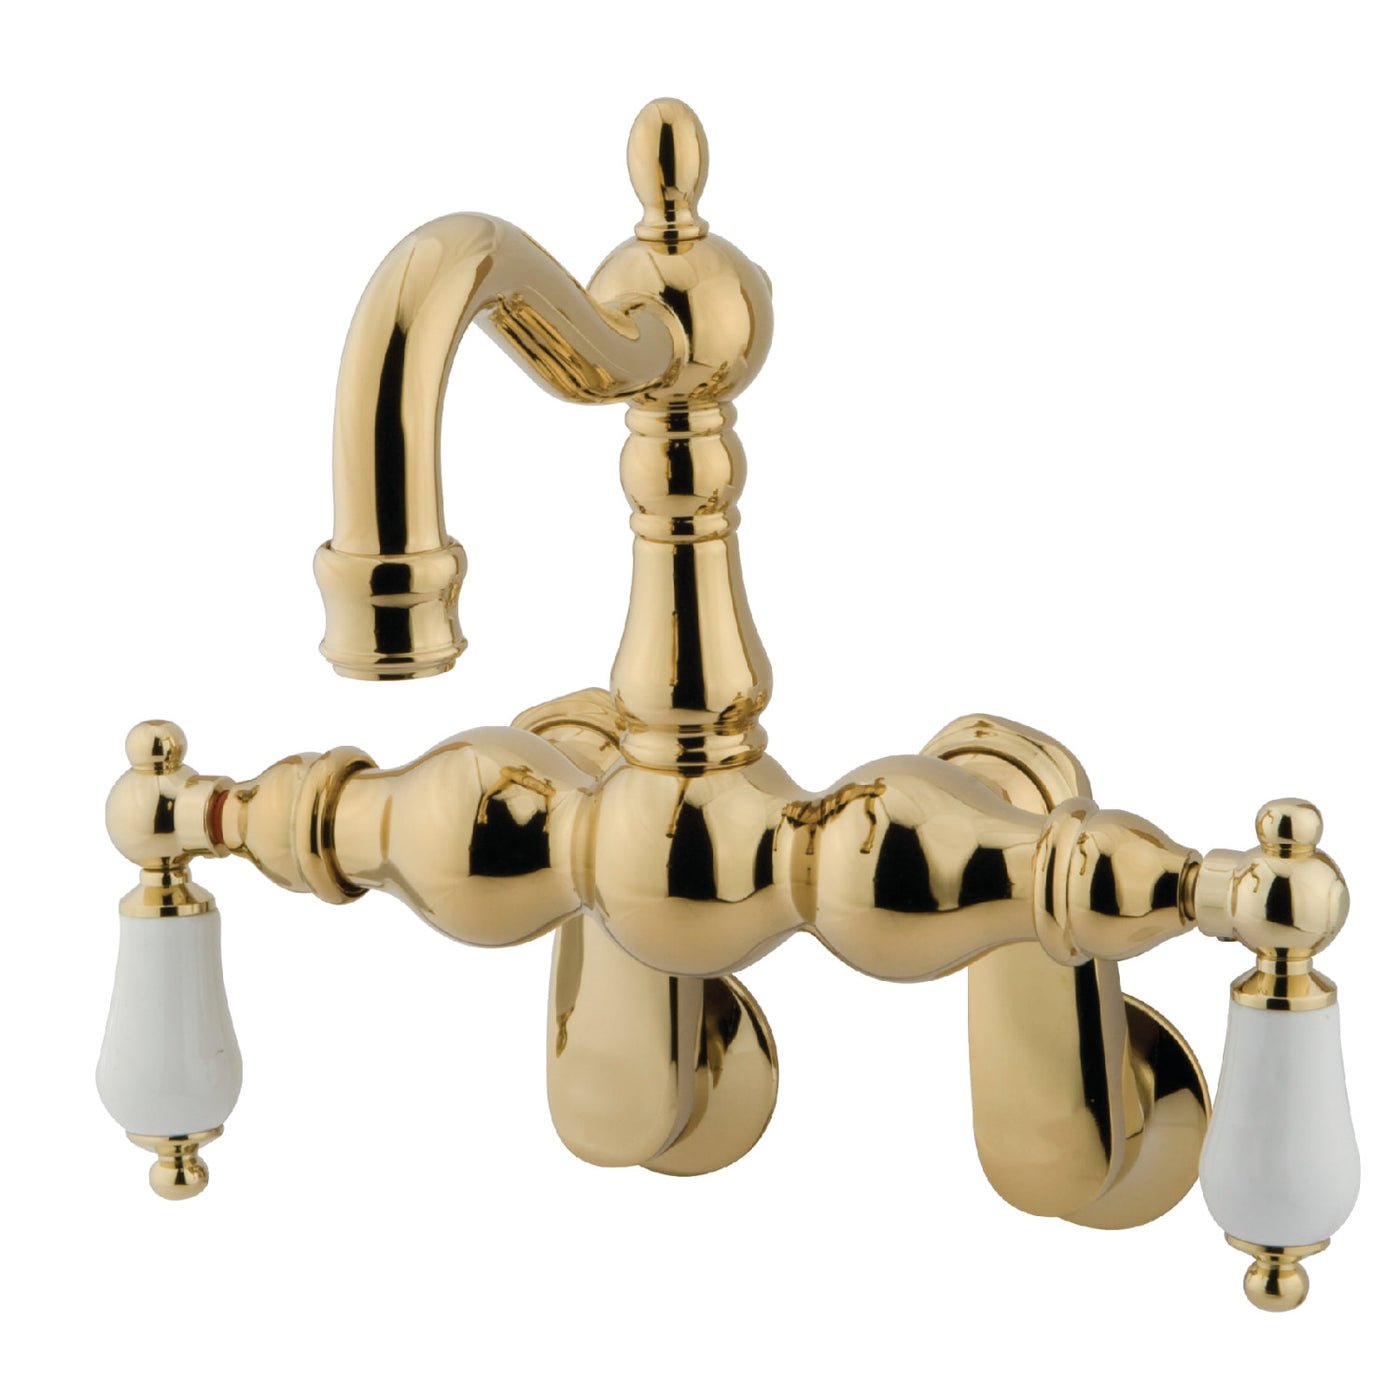 Elements of Design DT10812PL Adjustable Center Wall Mount Tub Faucet, Polished Brass